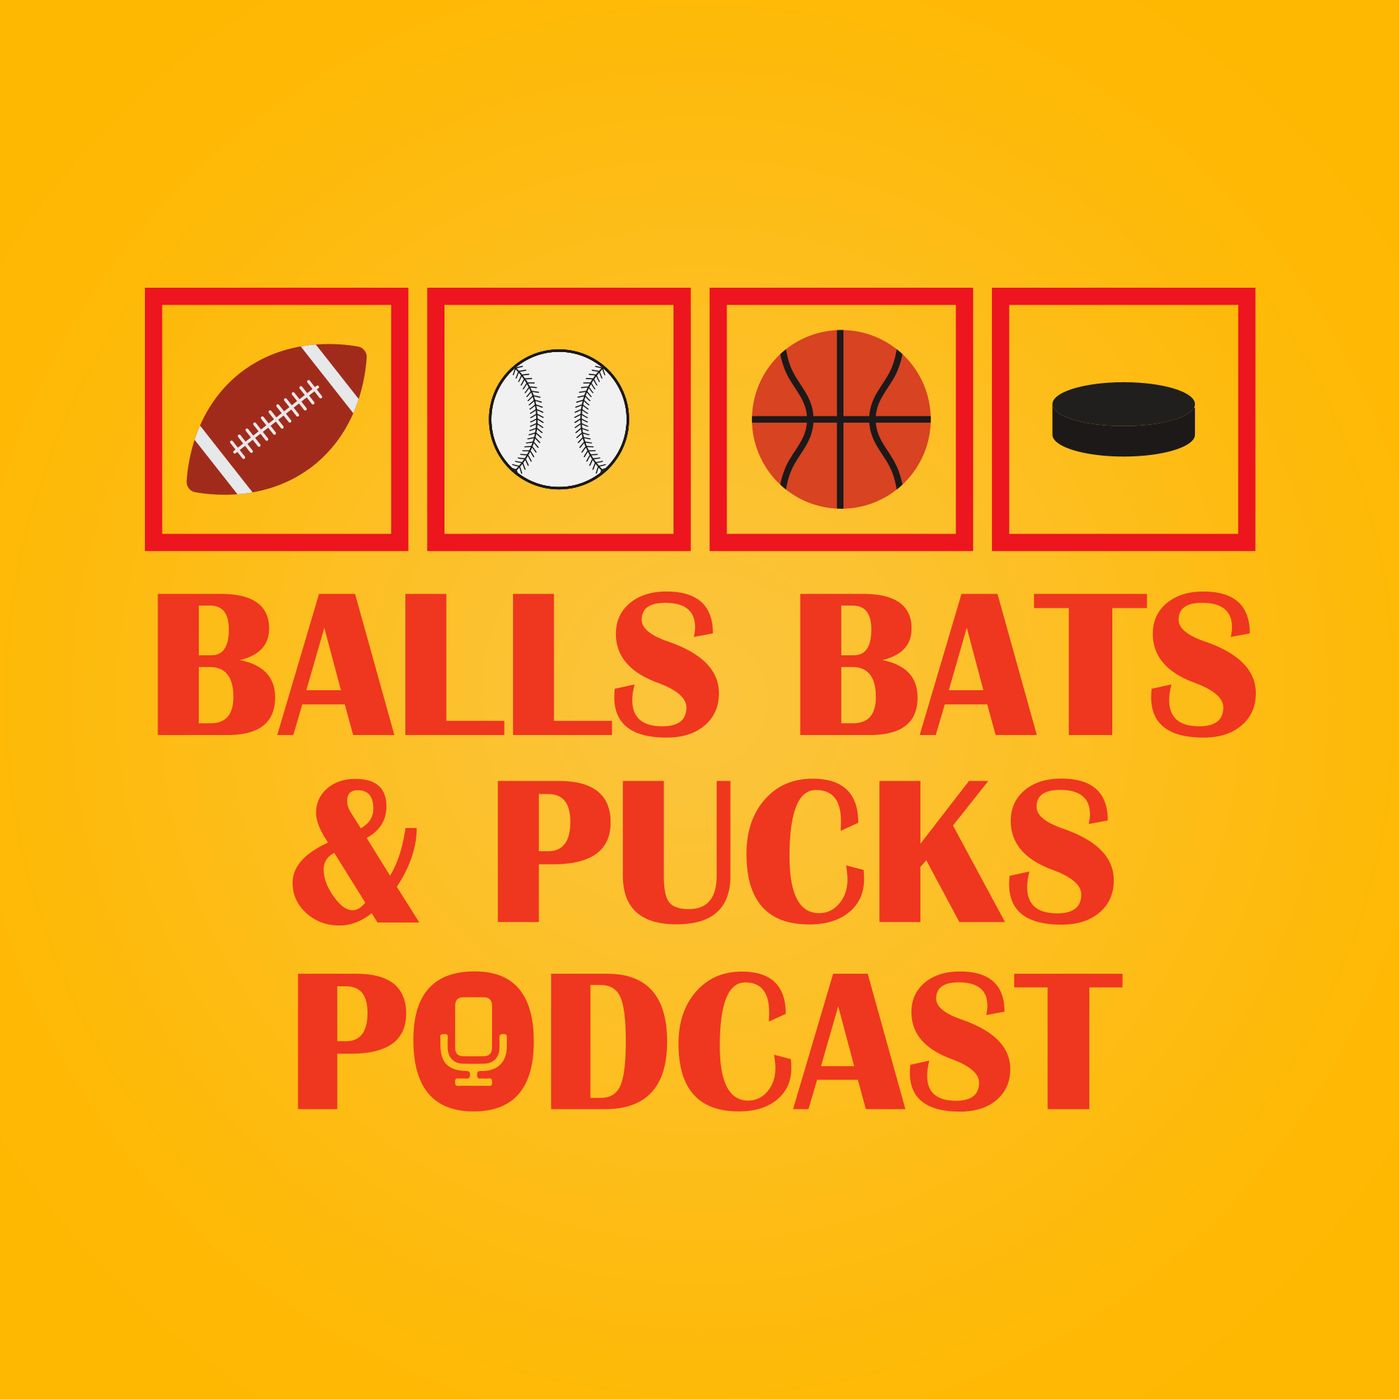 Balls Bats & Pucks Podcast